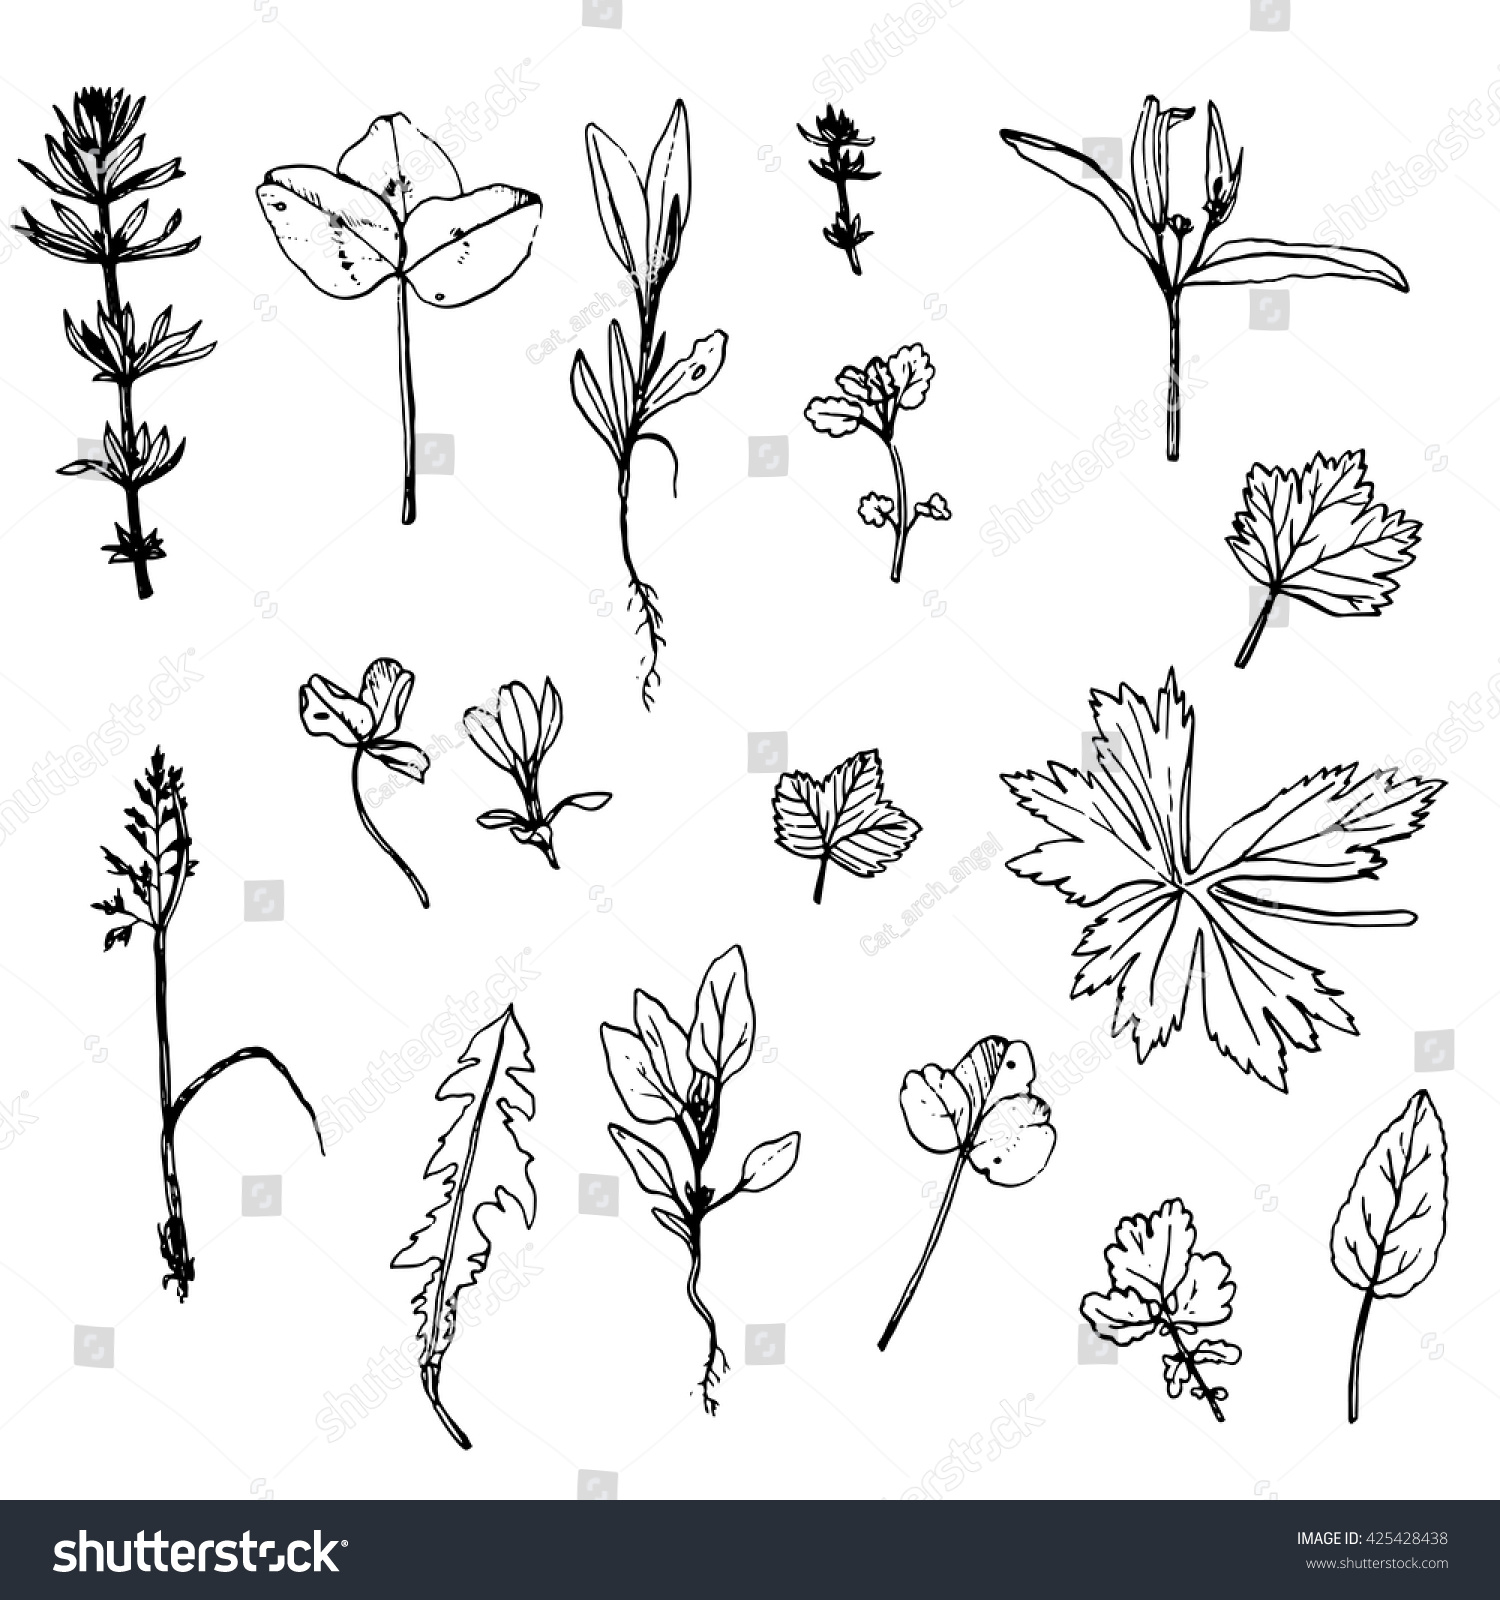 Vector Set Ink Drawing Wild Flowers Stock Vector 425428438 - Shutterstock